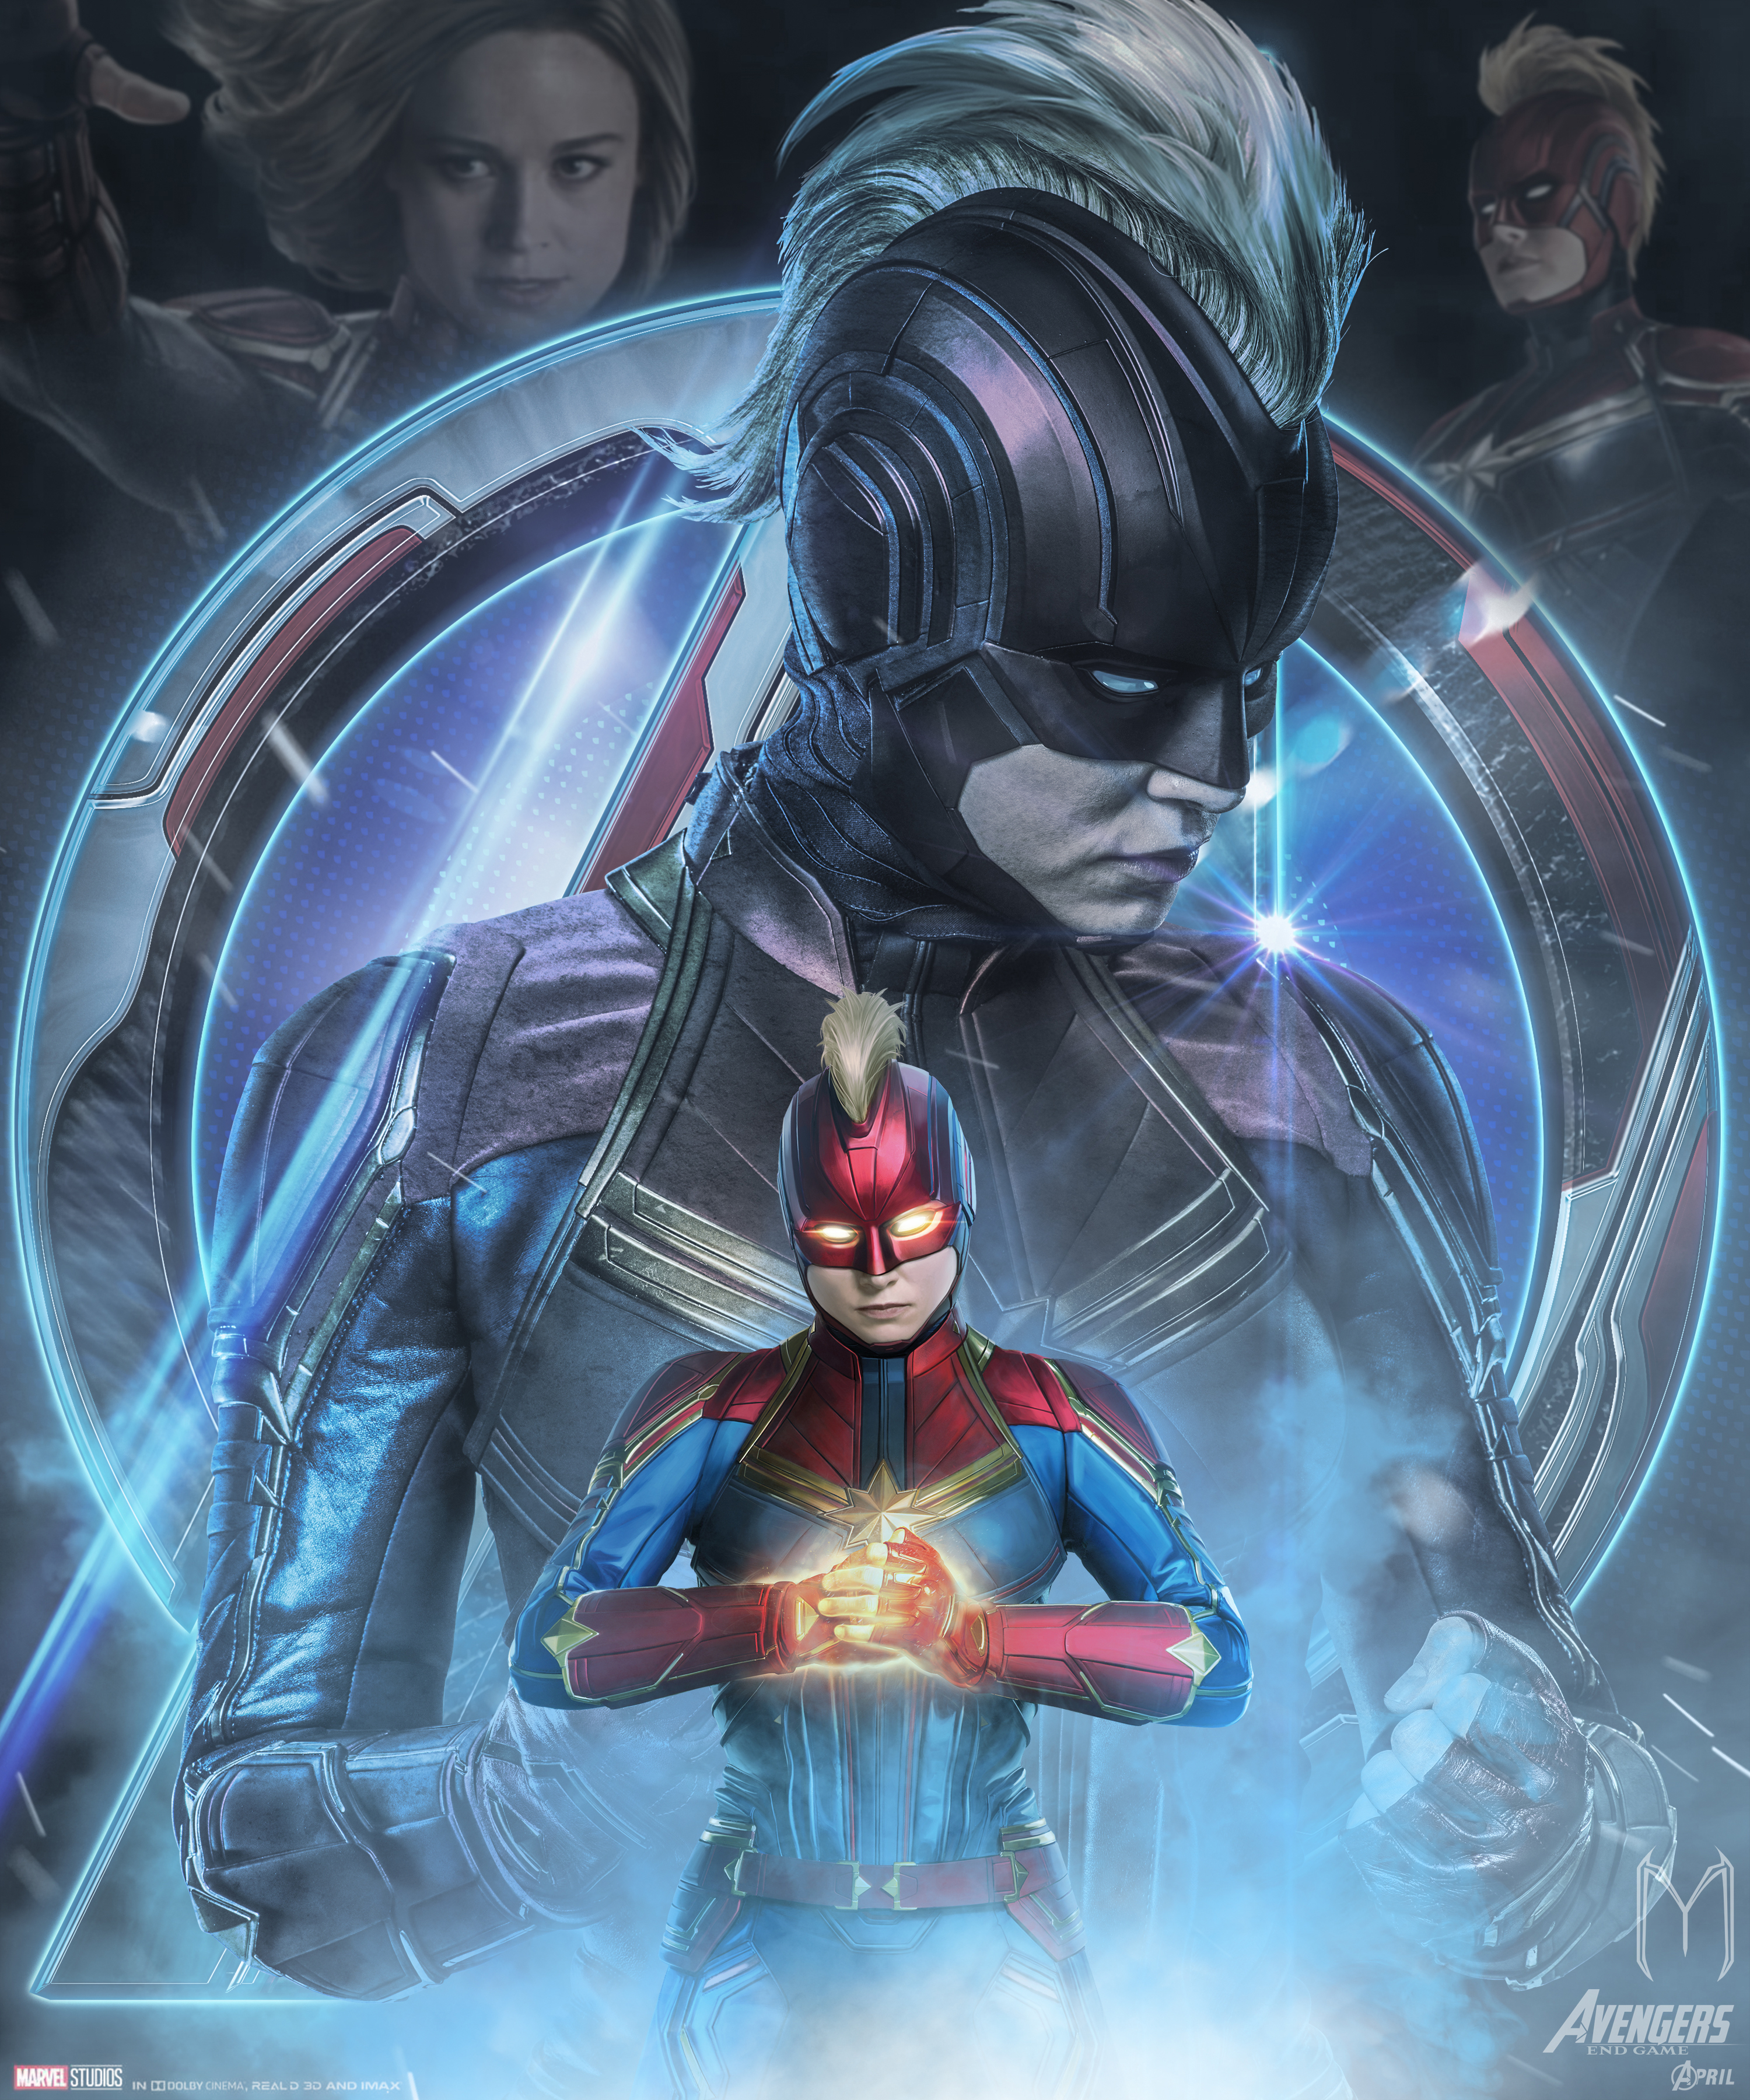 Avengers Endgame Captain Marvel Poster Art Wallpaper HD Movies 4k